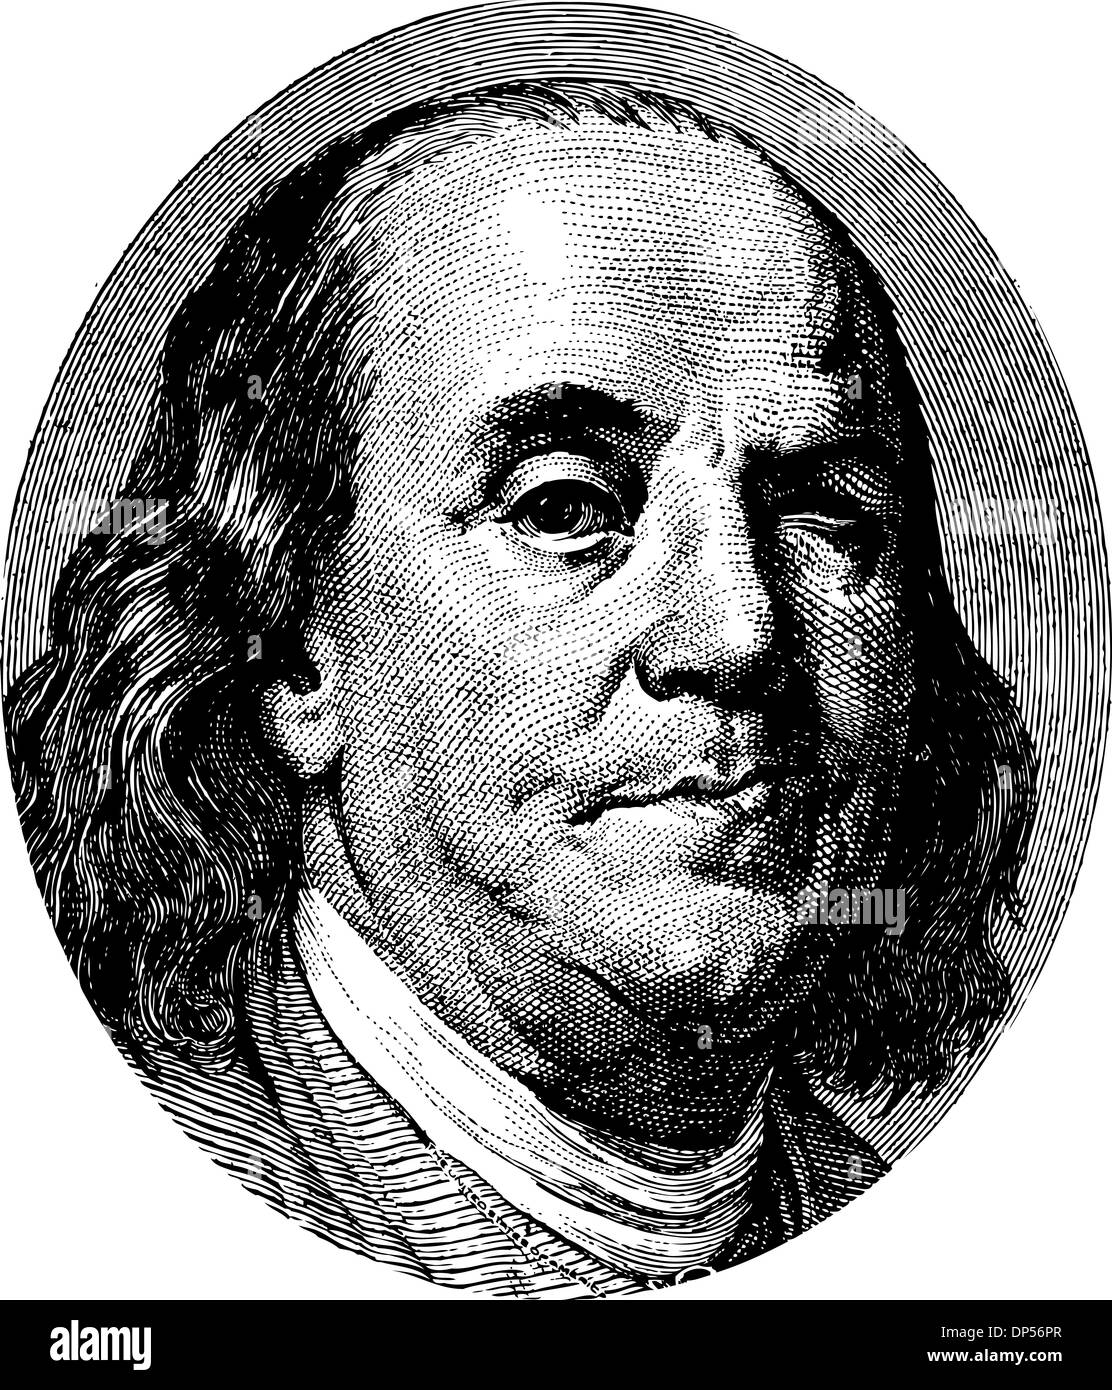 Benjamin Franklin winking portrait Stock Photo